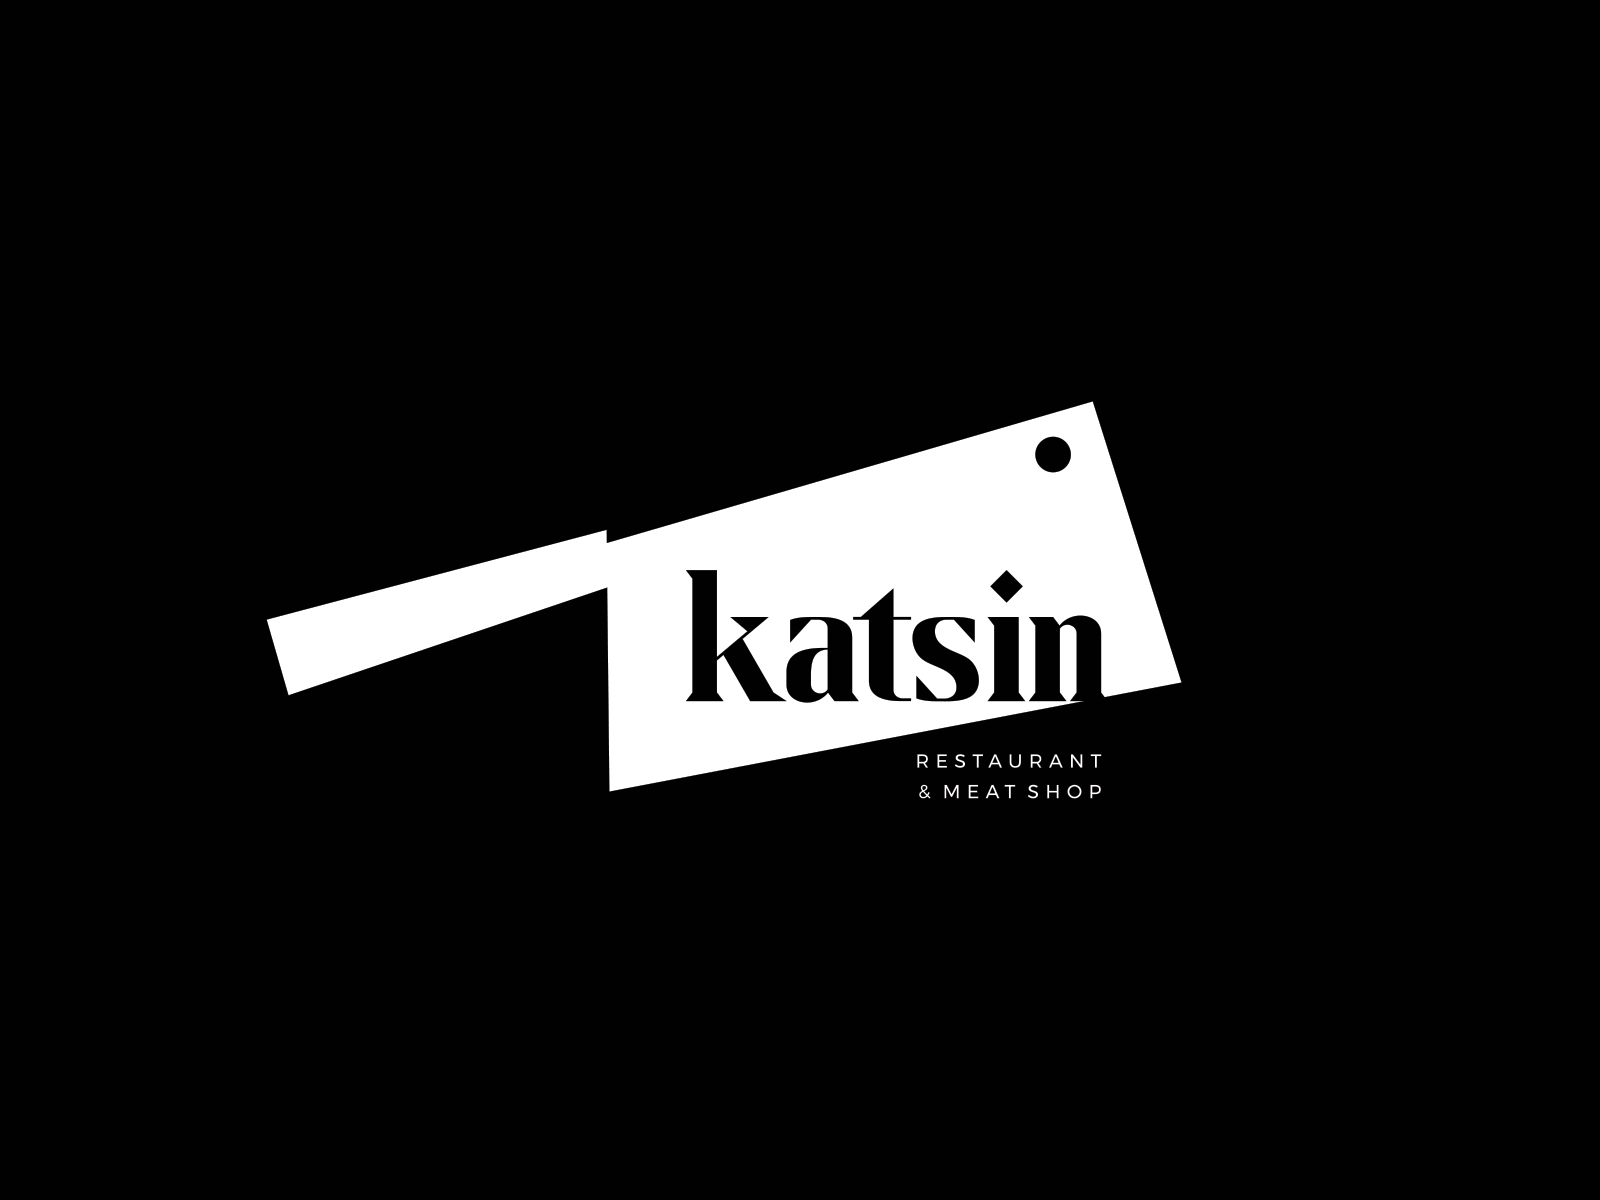 Katsin Restaurant Logo Design and Branding